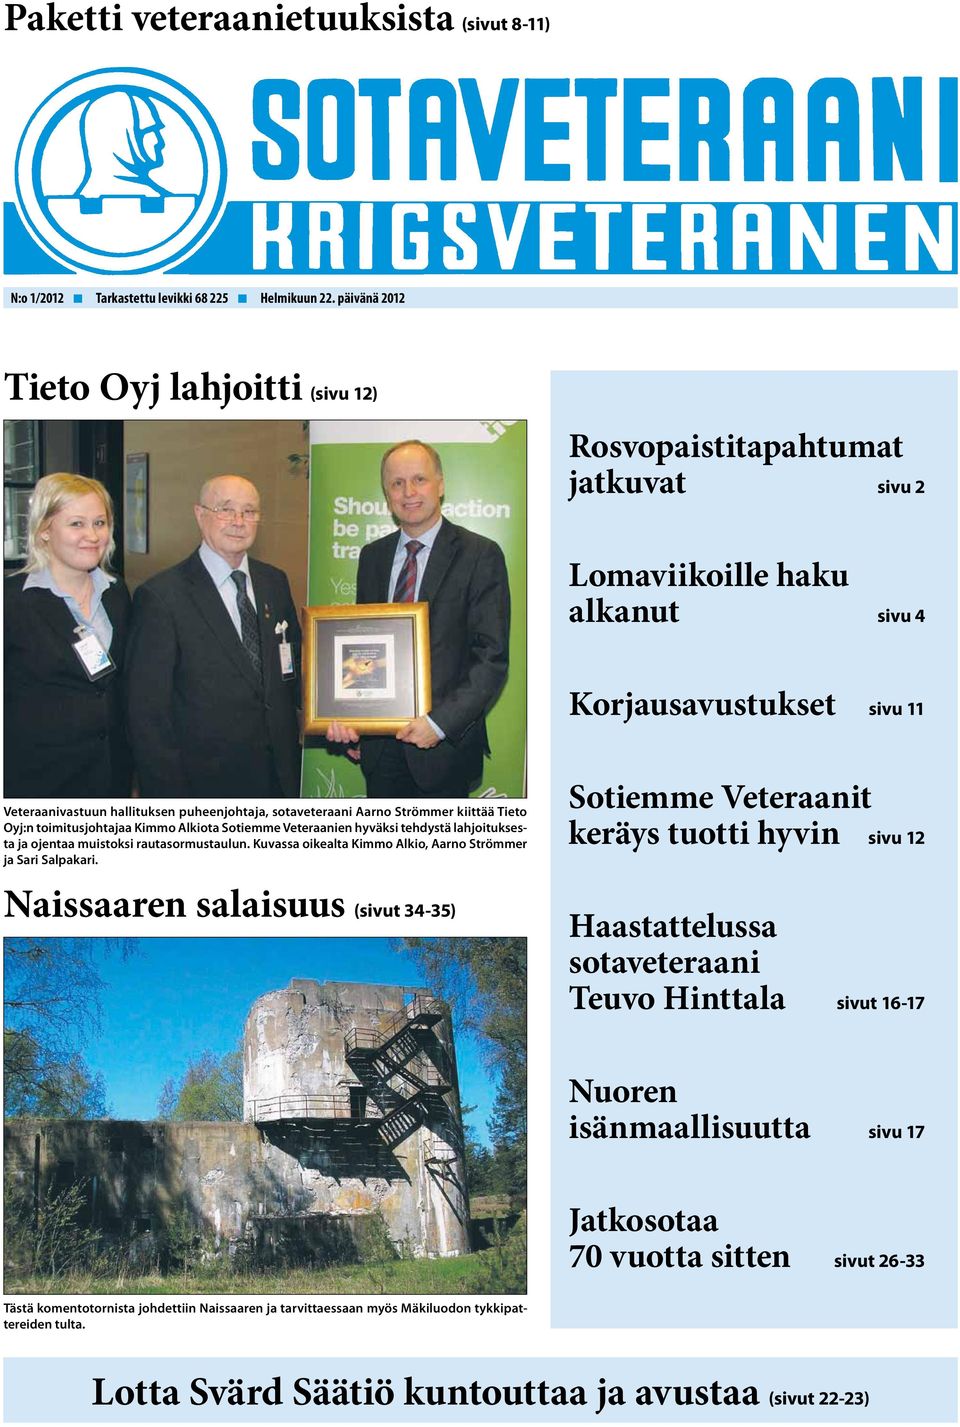 Aarno Strömmer kiittää Tieto Oyj:n toimitusjohtajaa Kimmo Alkiota Sotiemme Veteraanien hyväksi tehdystä lahjoituksesta ja ojentaa muistoksi rautasormustaulun.